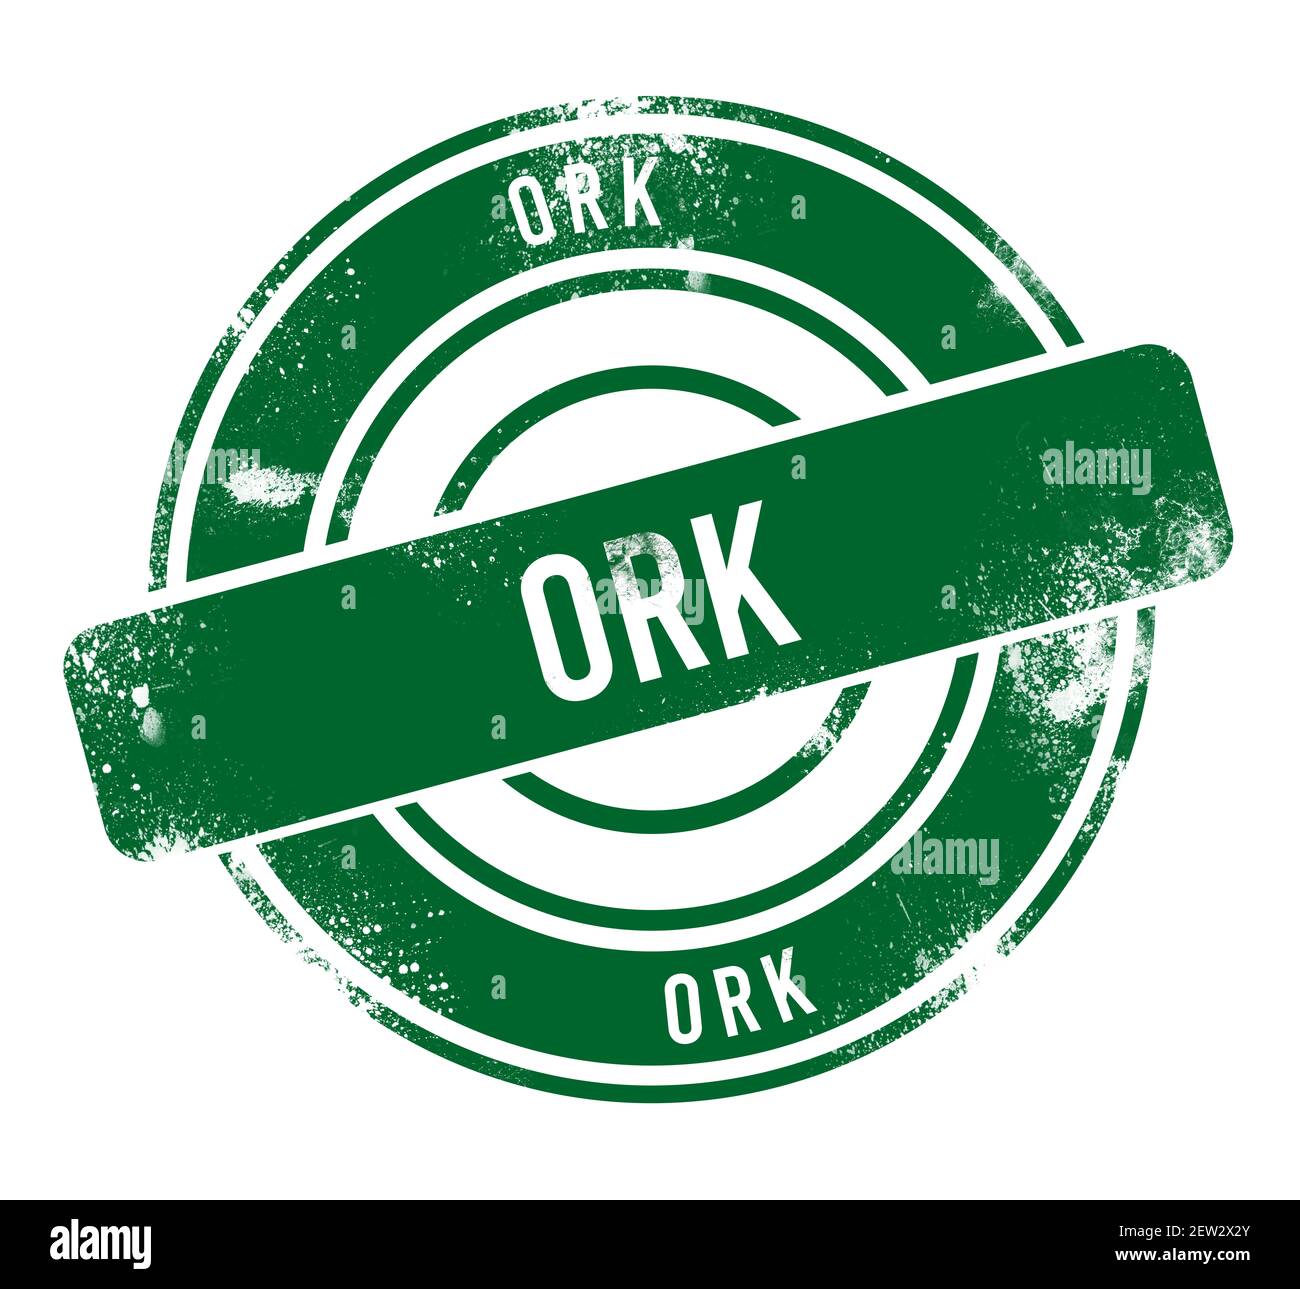 Ork - green round grunge button, stamp Stock Photo